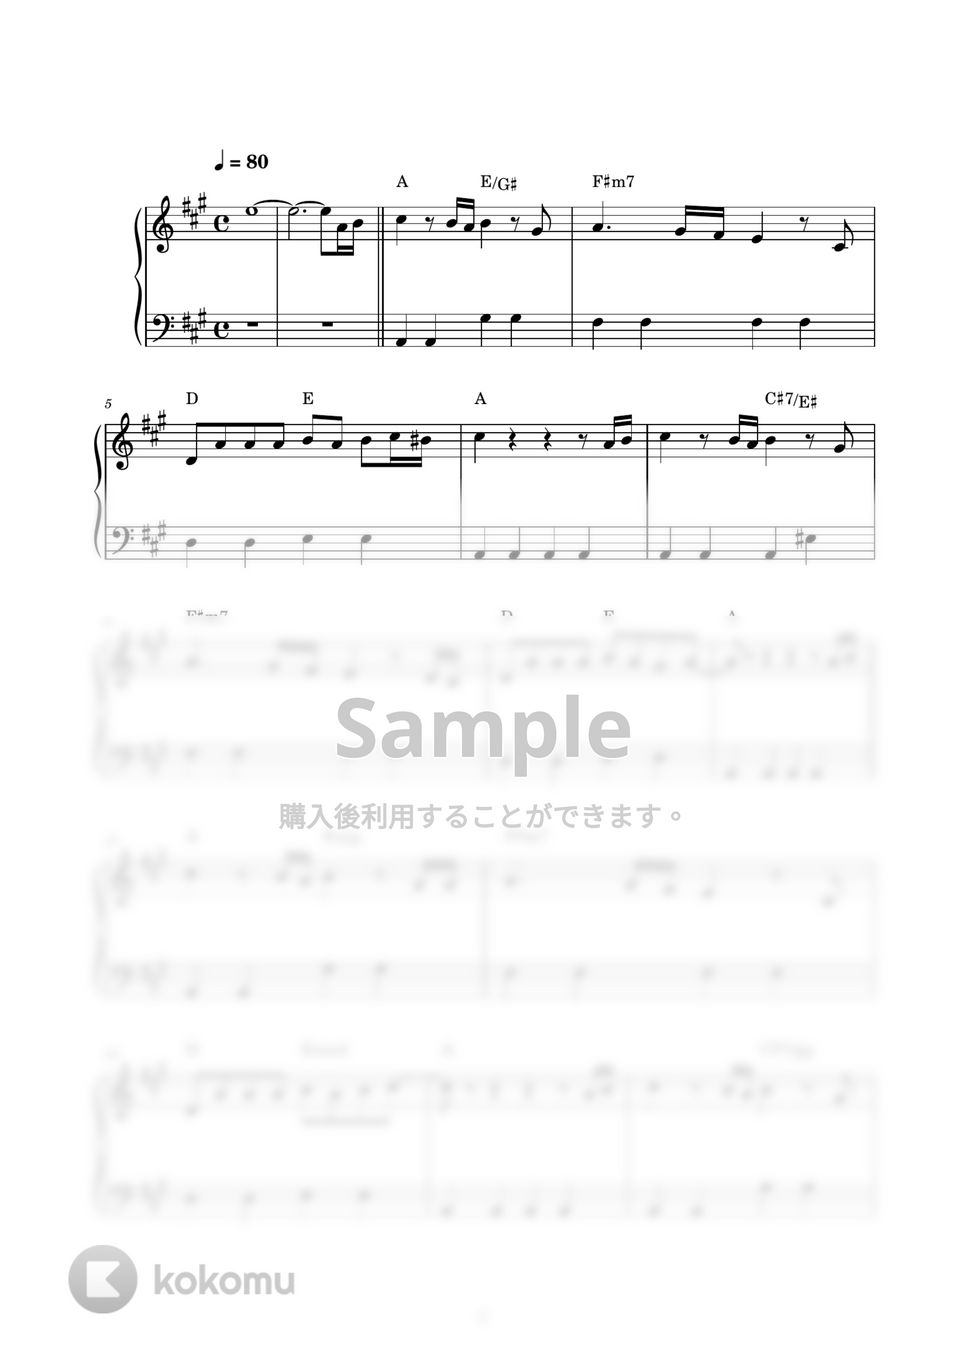 RADWIMPS - カナタハルカ (ピアノ楽譜 / かんたん両手 / 歌詞付き / ドレミ付き / 初心者向き) by piano.tokyo